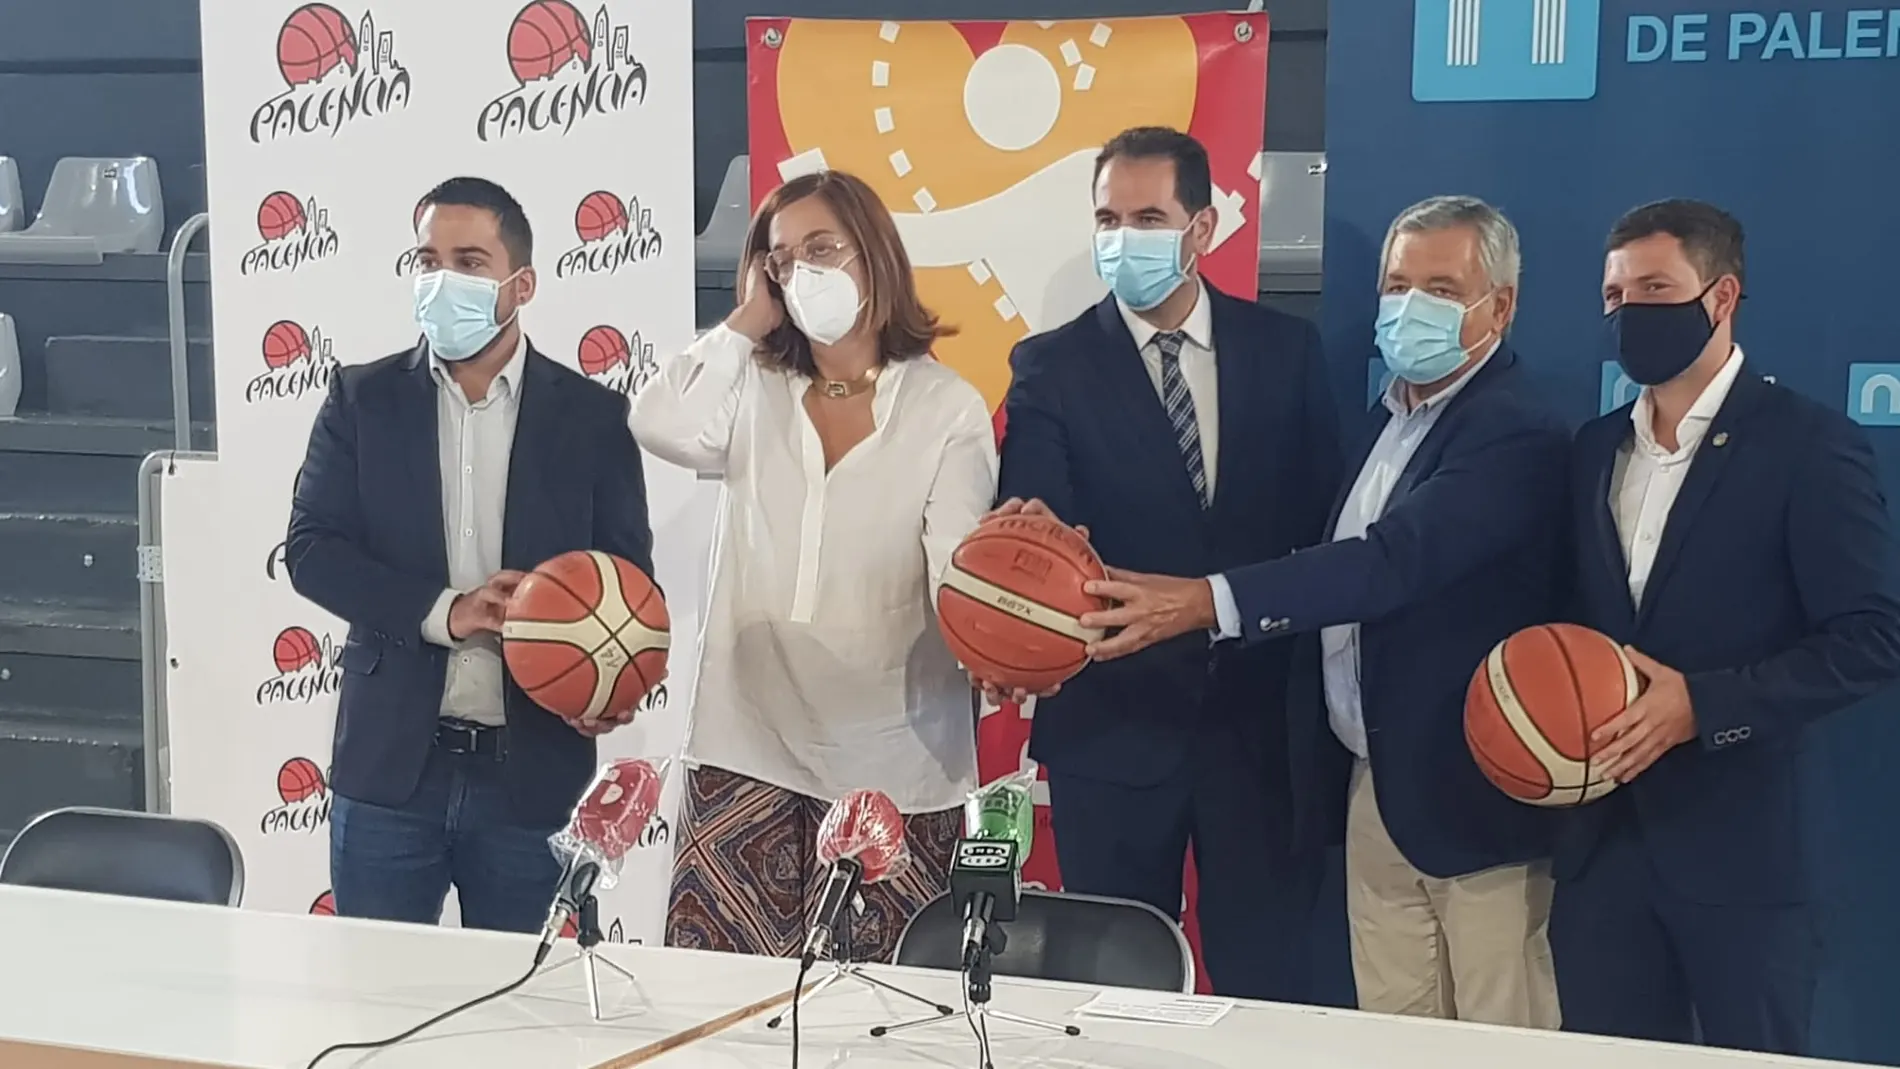 Presentación del "Destino Palencia Baloncesto" con el apoyo del Ayuntamiento y la Diputación